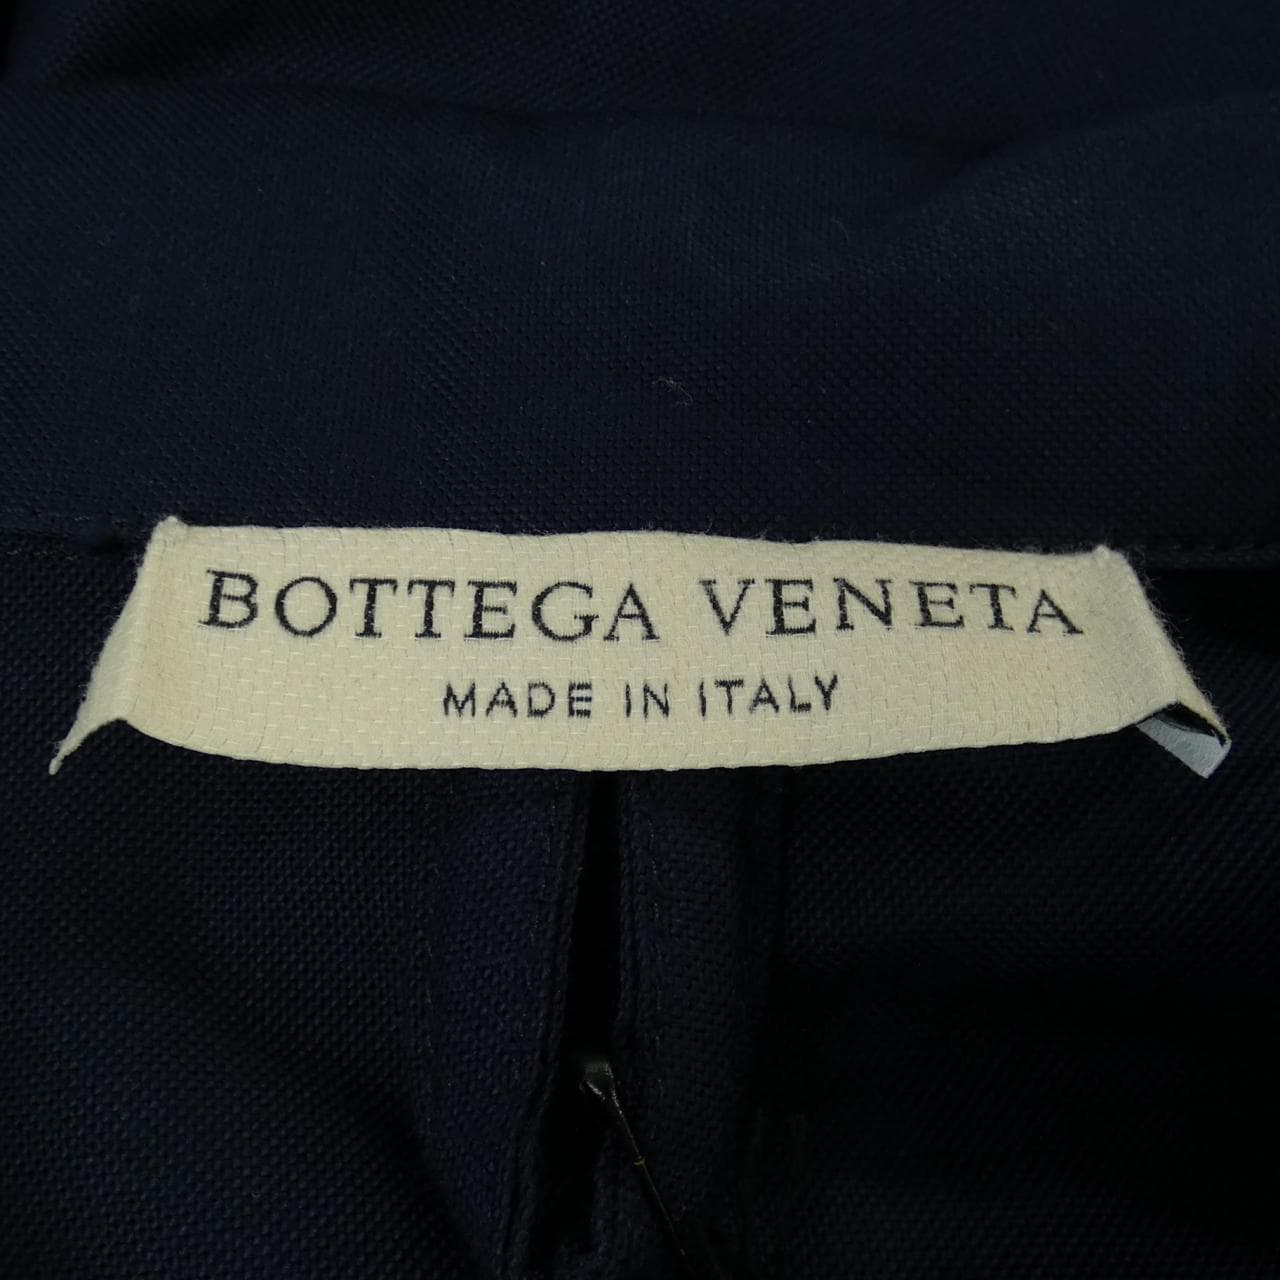 BOTTEGA VENETA shirt